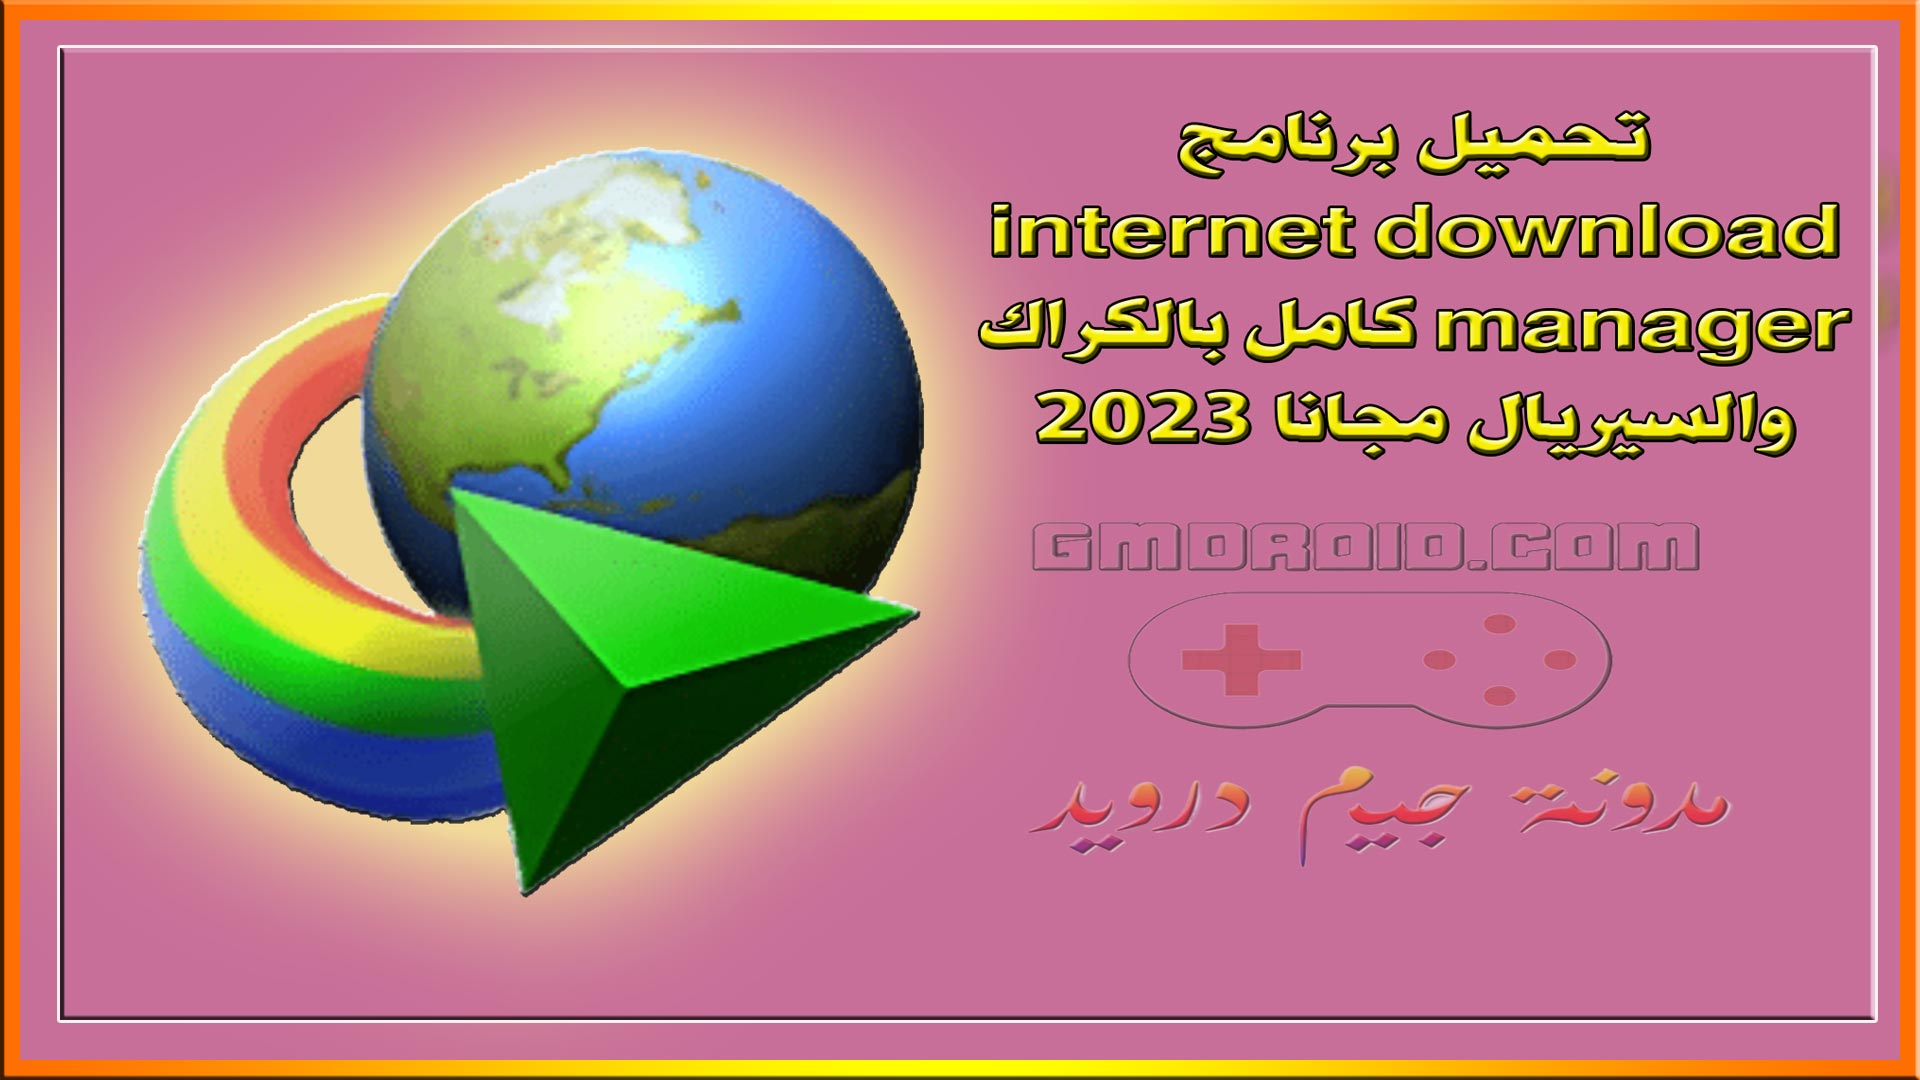 تحميل برنامج internet download manager كامل بالكراك والسيريال مجانا 2023